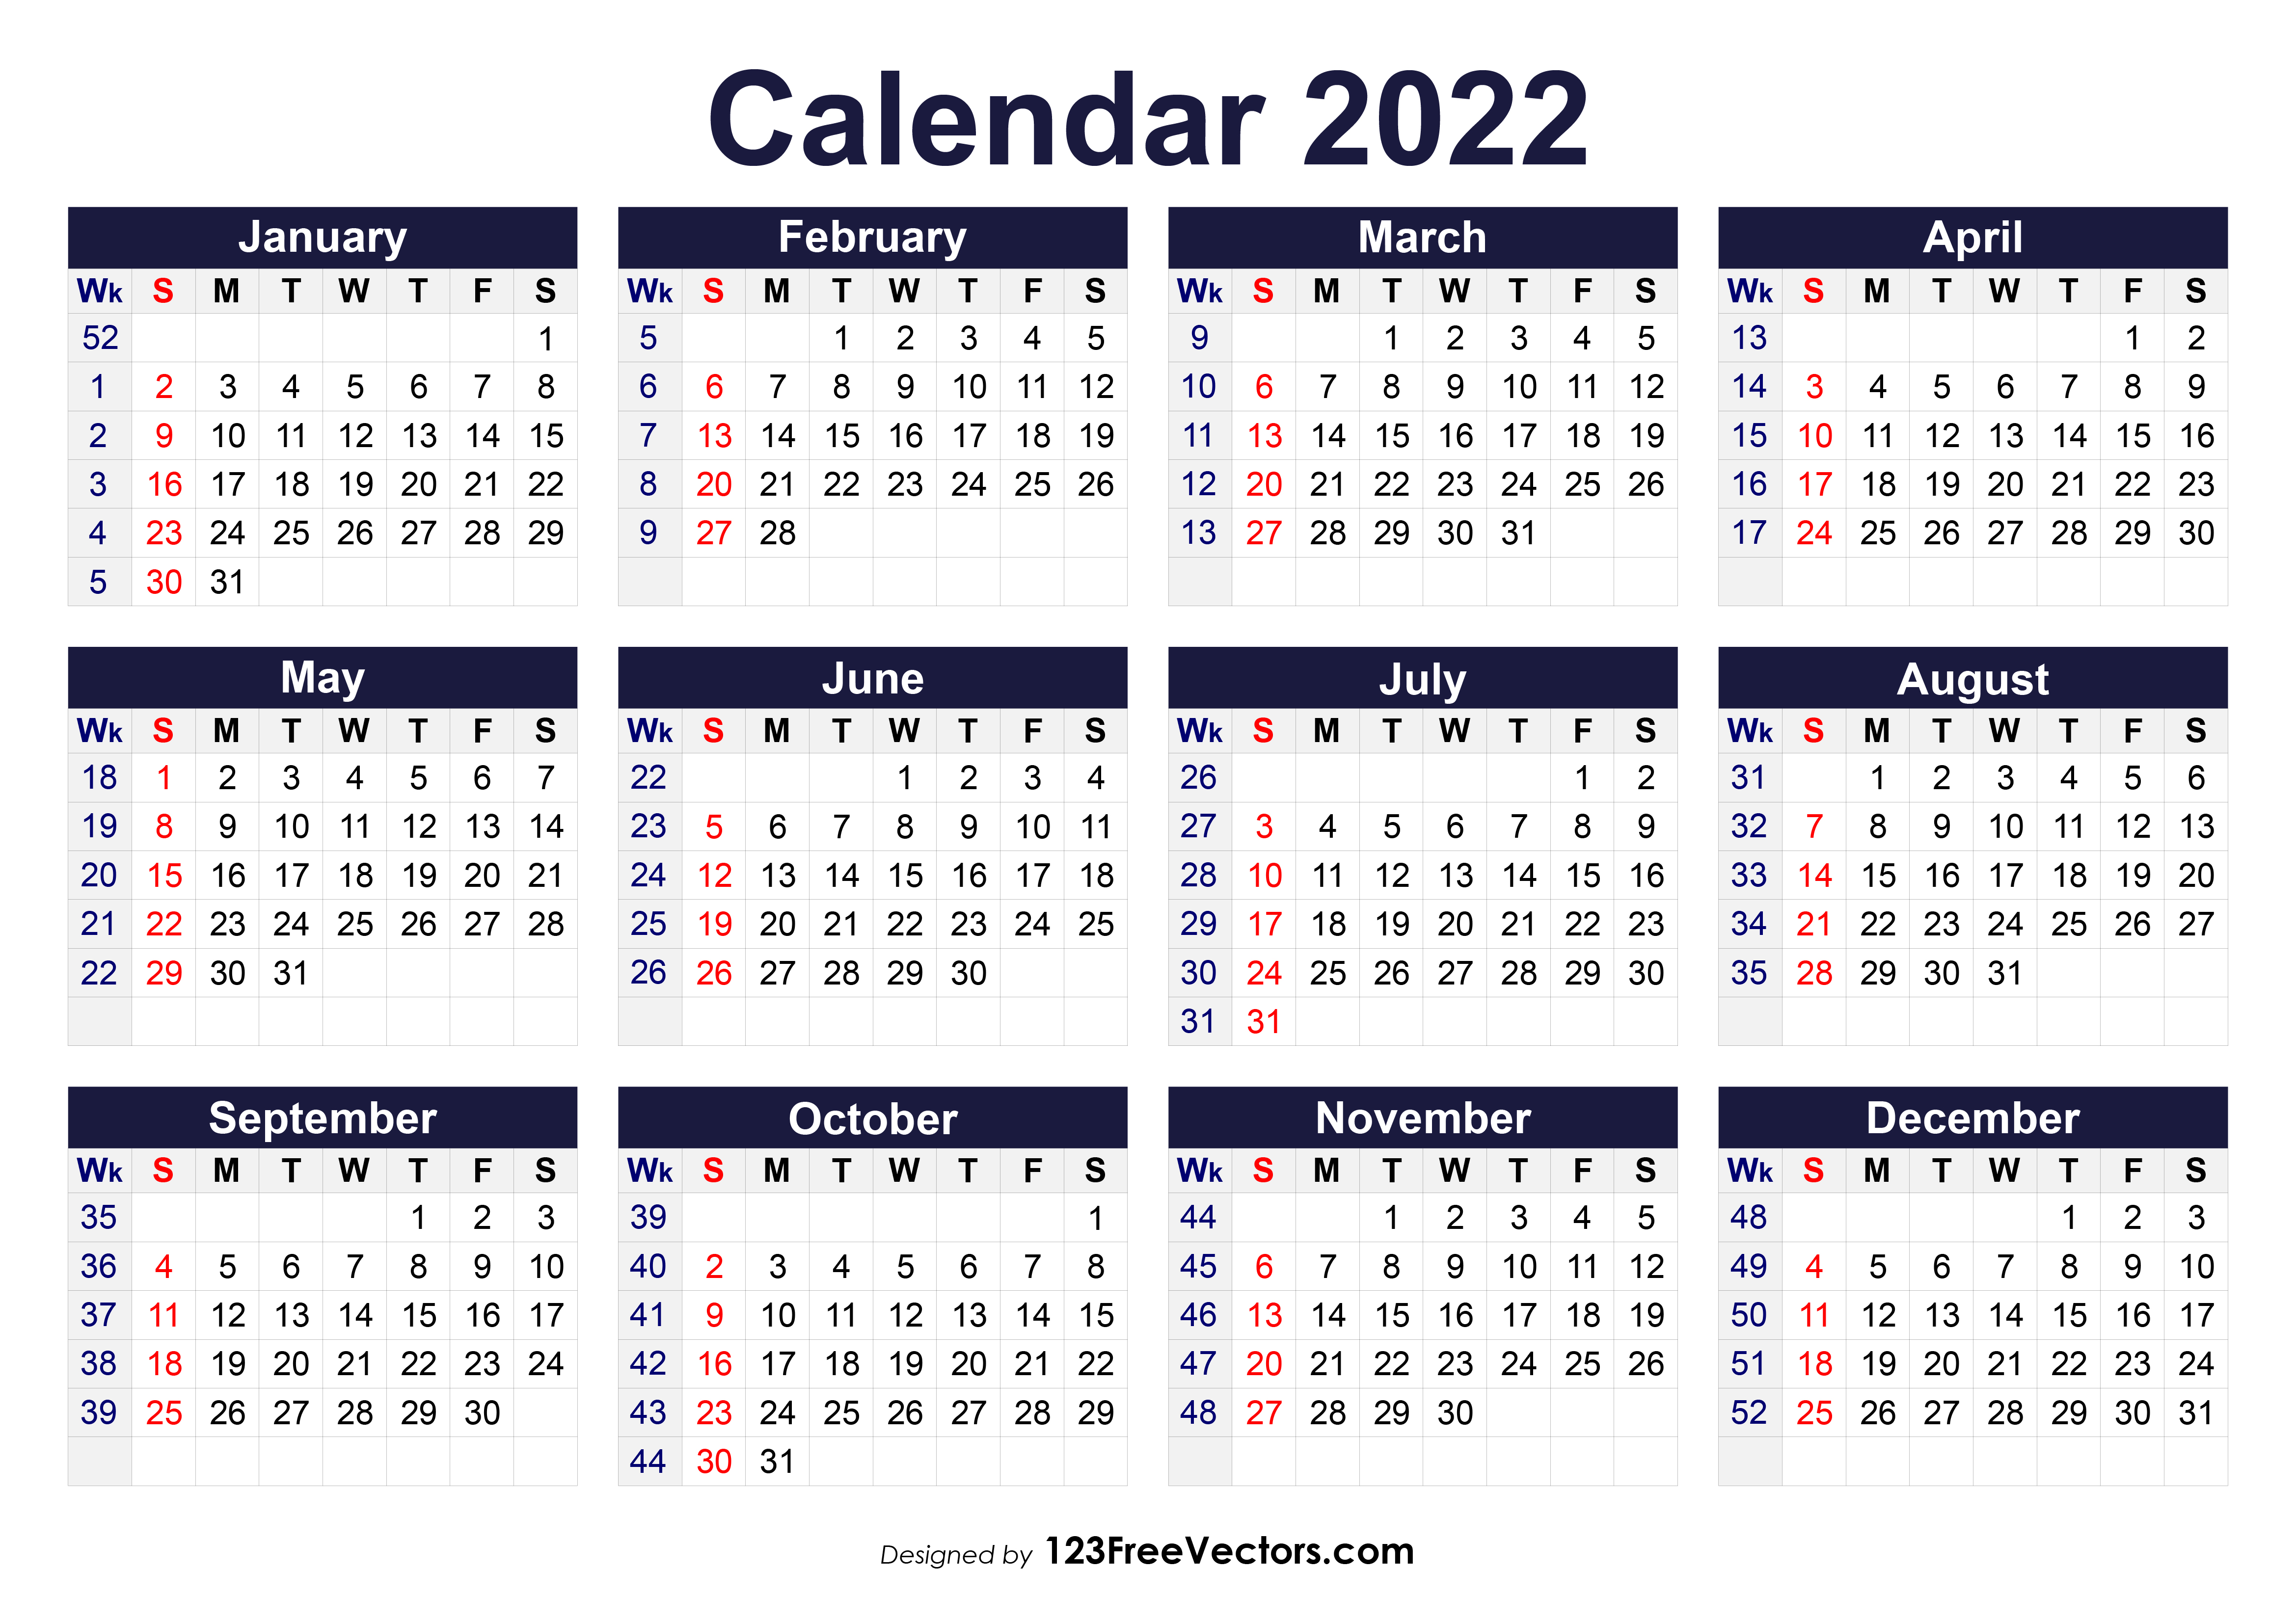 Free 2022 Calendar Pdf Free Printable 2022 Calendar With Week Numbers